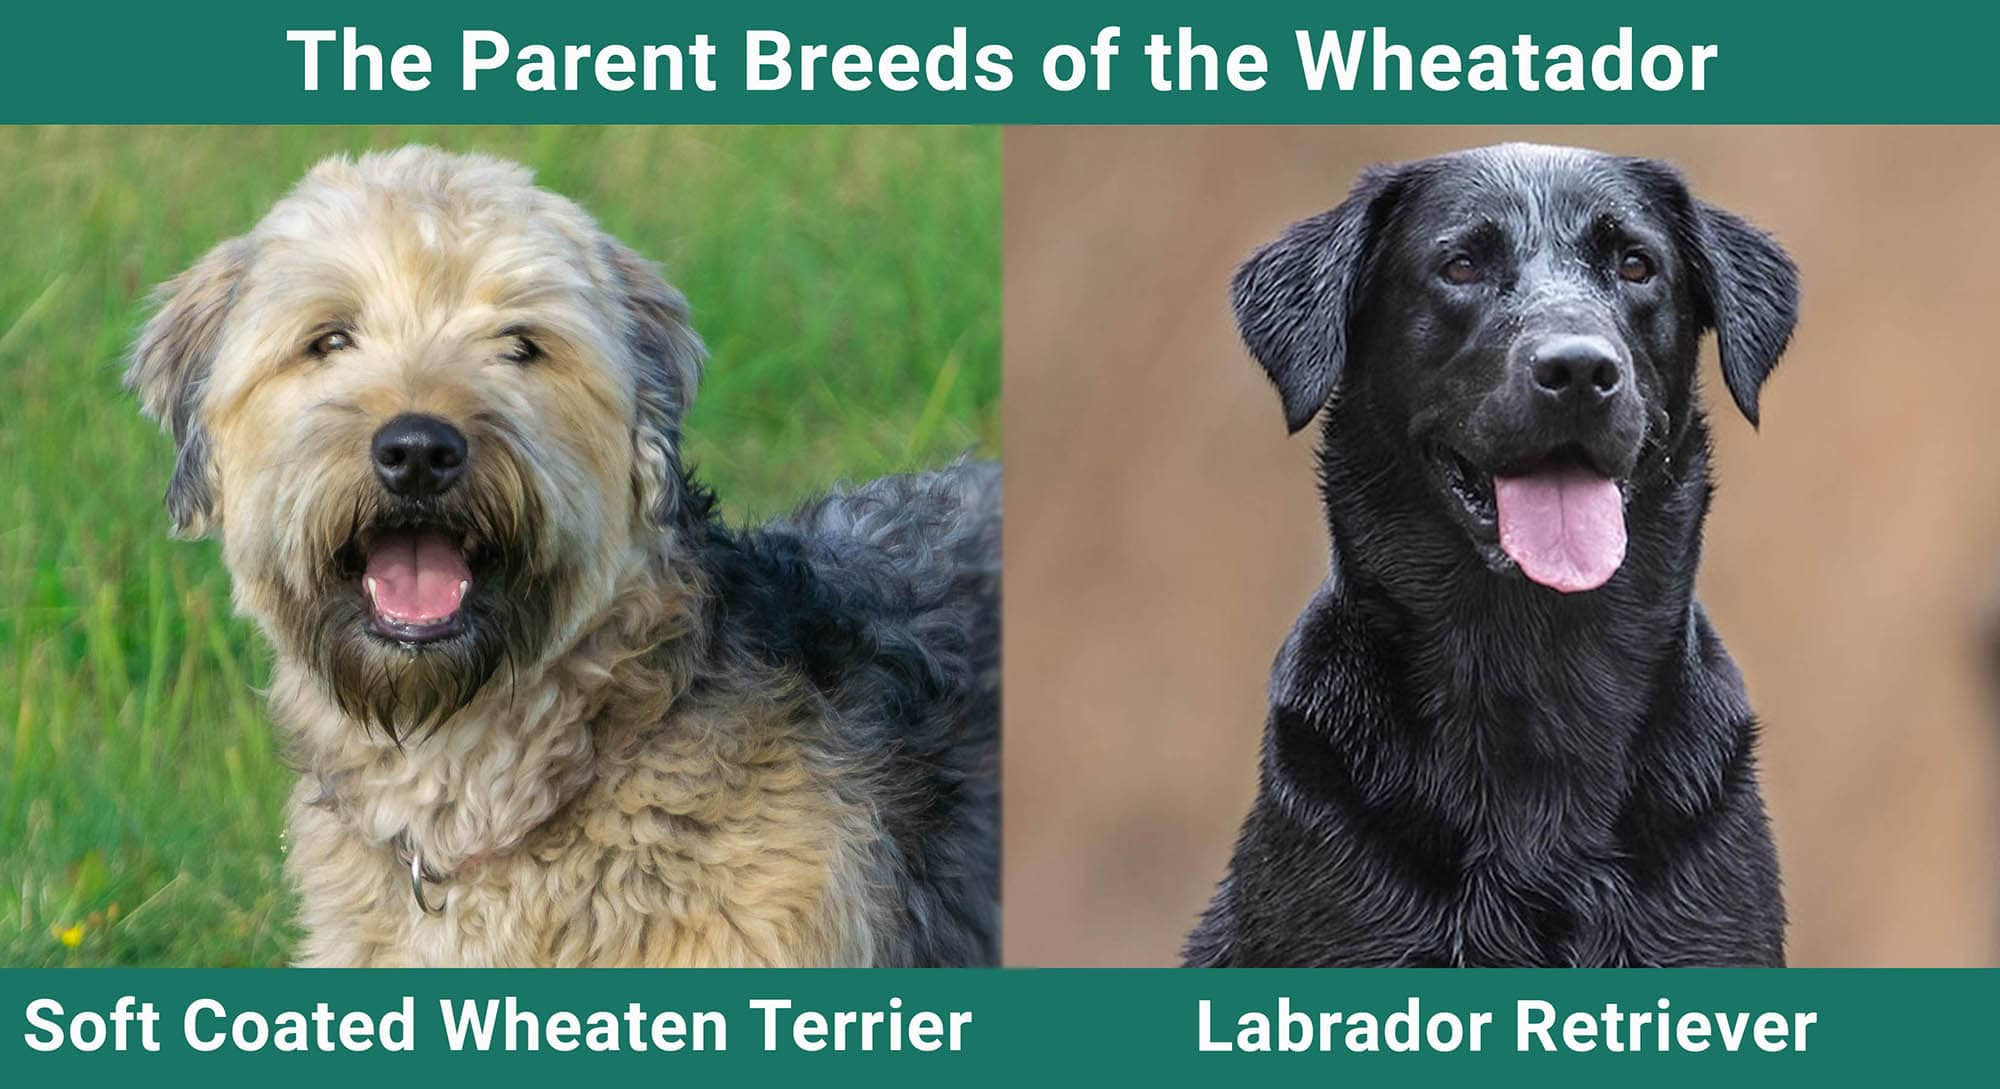 The Parent Breeds of the Wheatador